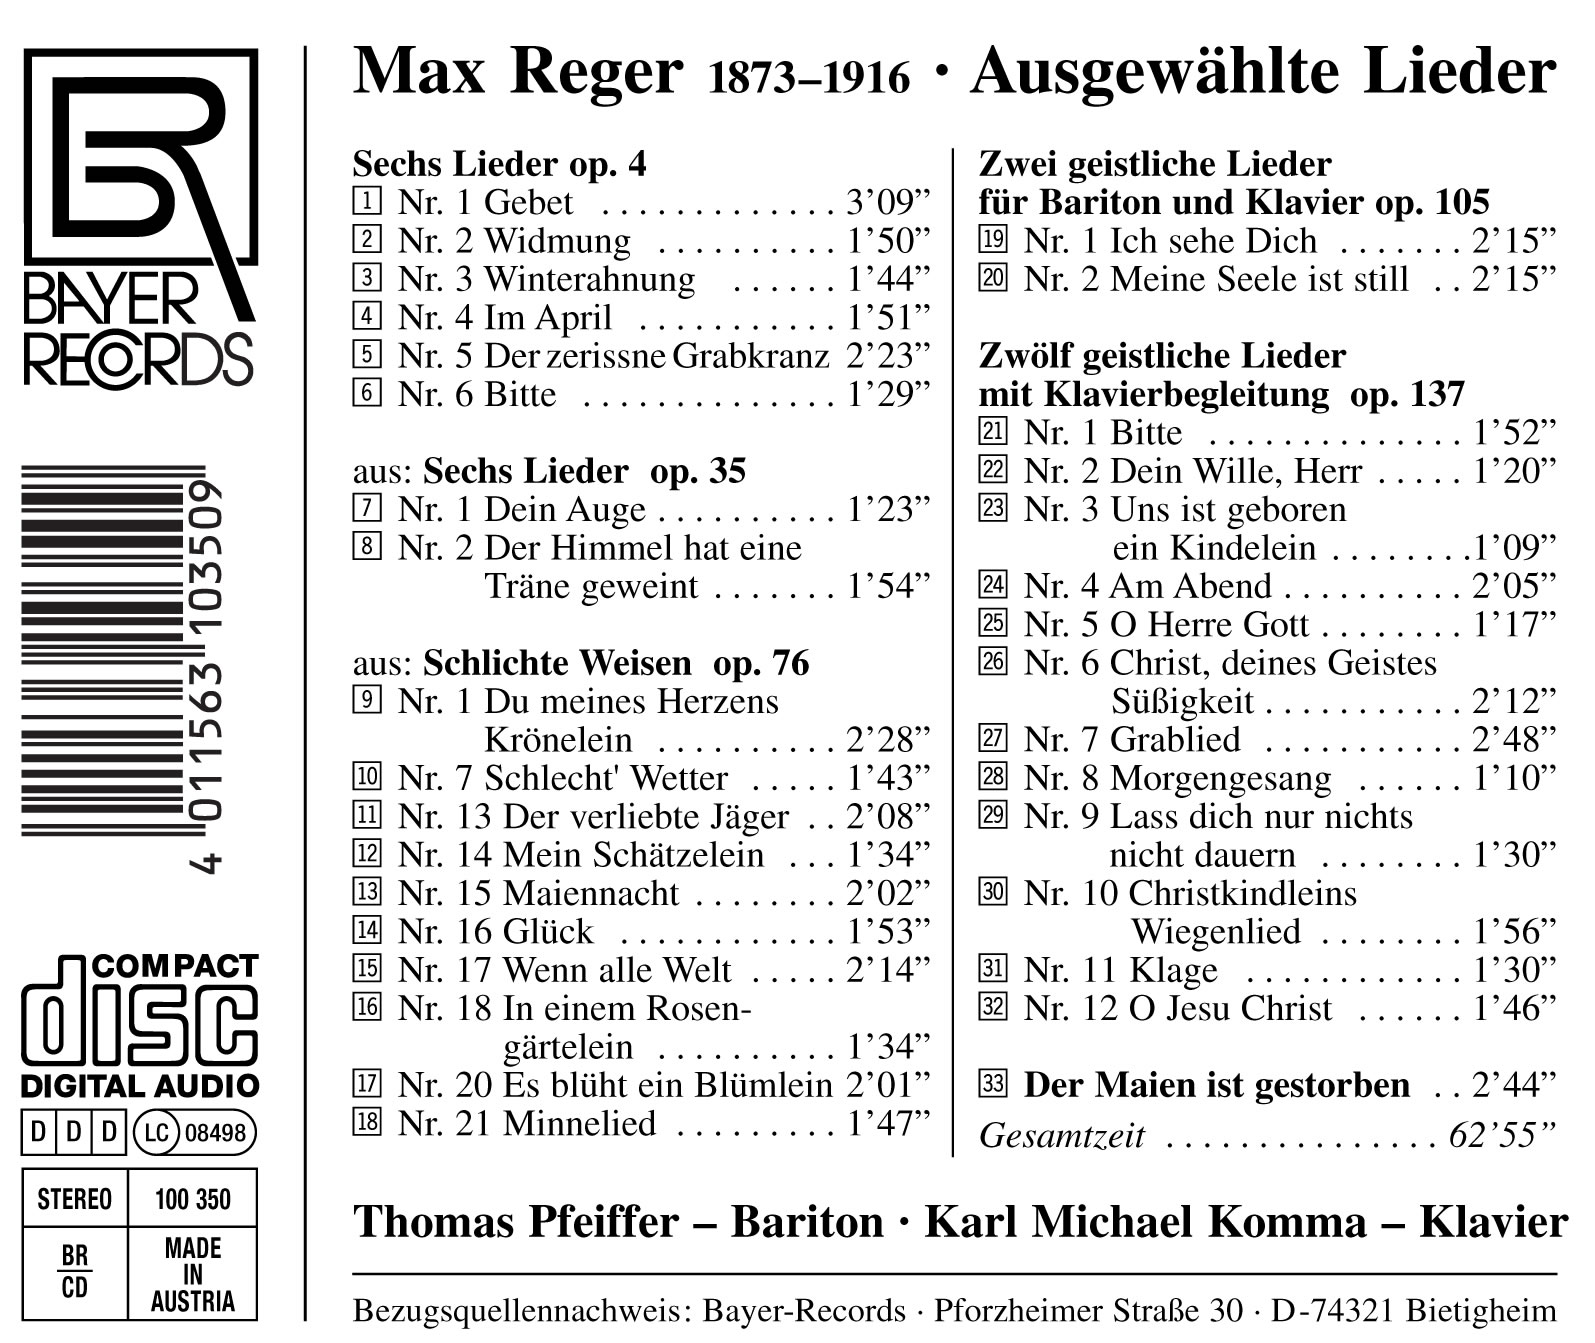 Max Reger - Ausgewählte Lieder